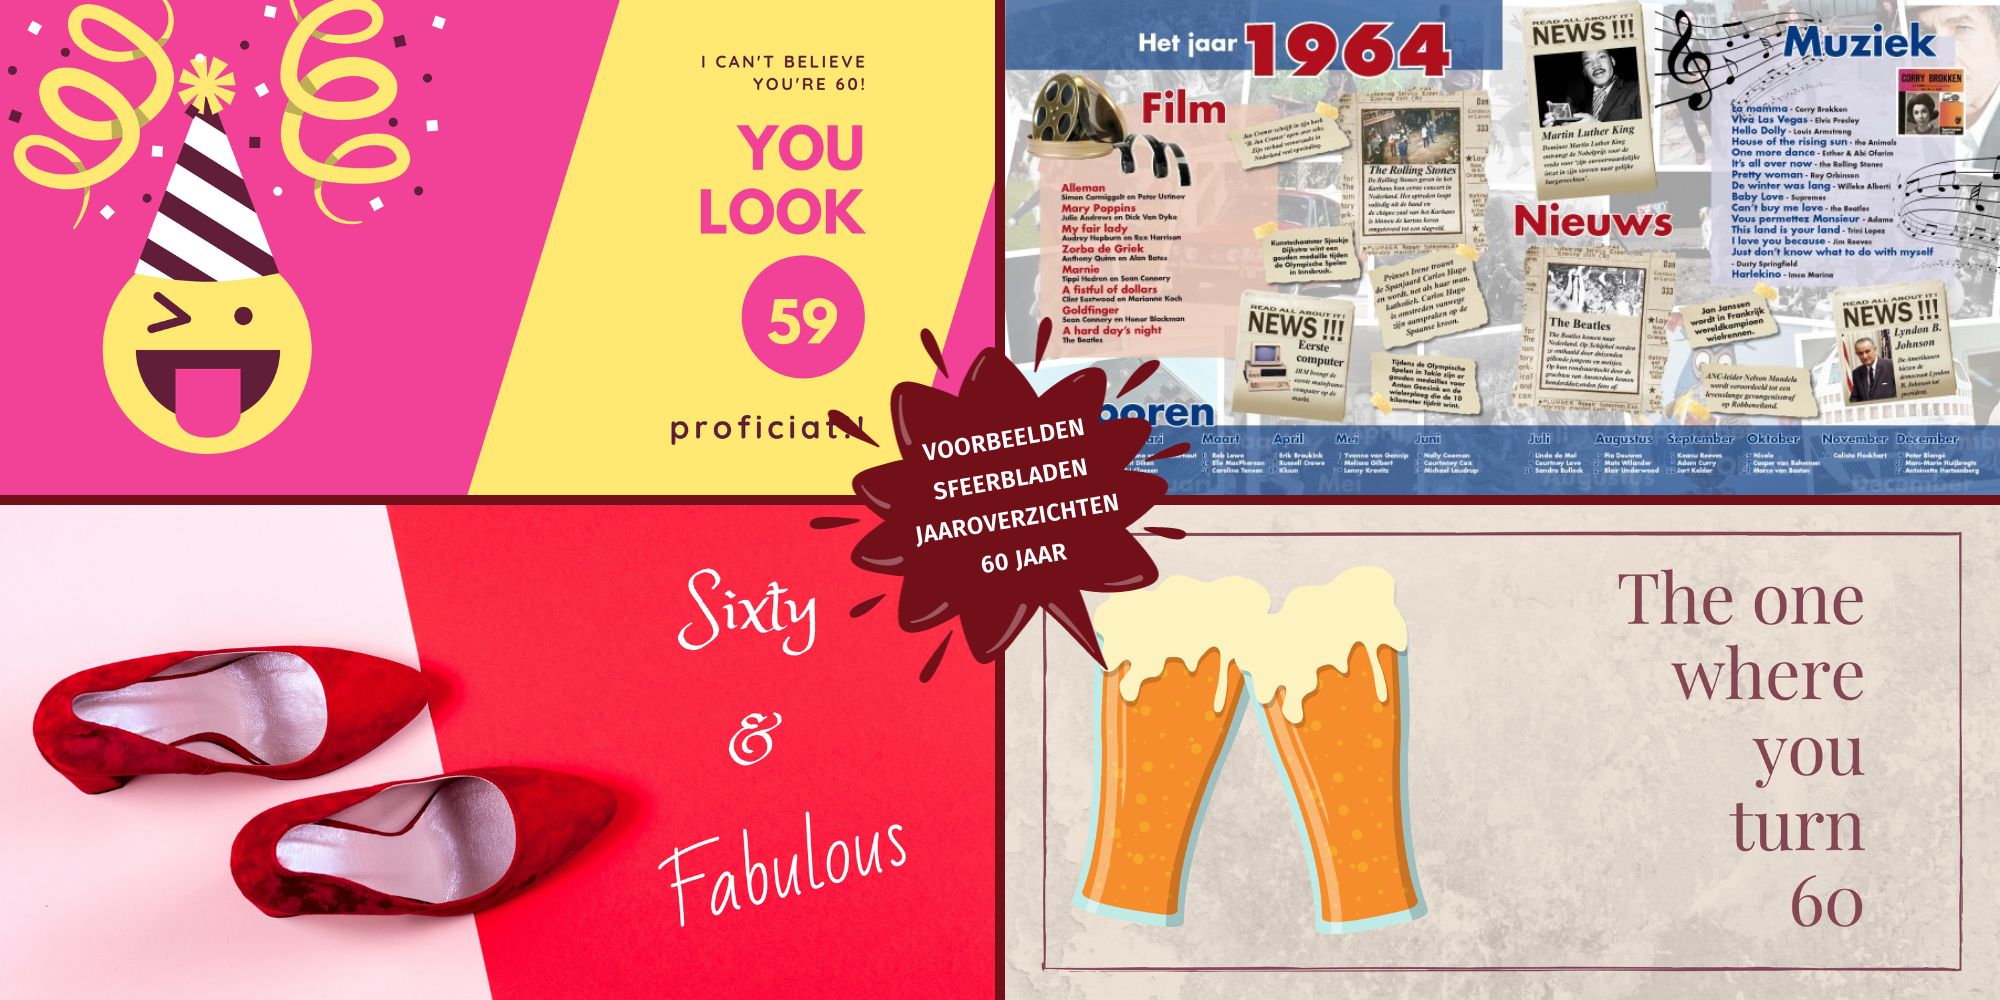 Cadeau 60 jaar verjaardag voorbeelden sfeerbladen jaaroverzichten vriendenboek vriendenboekje